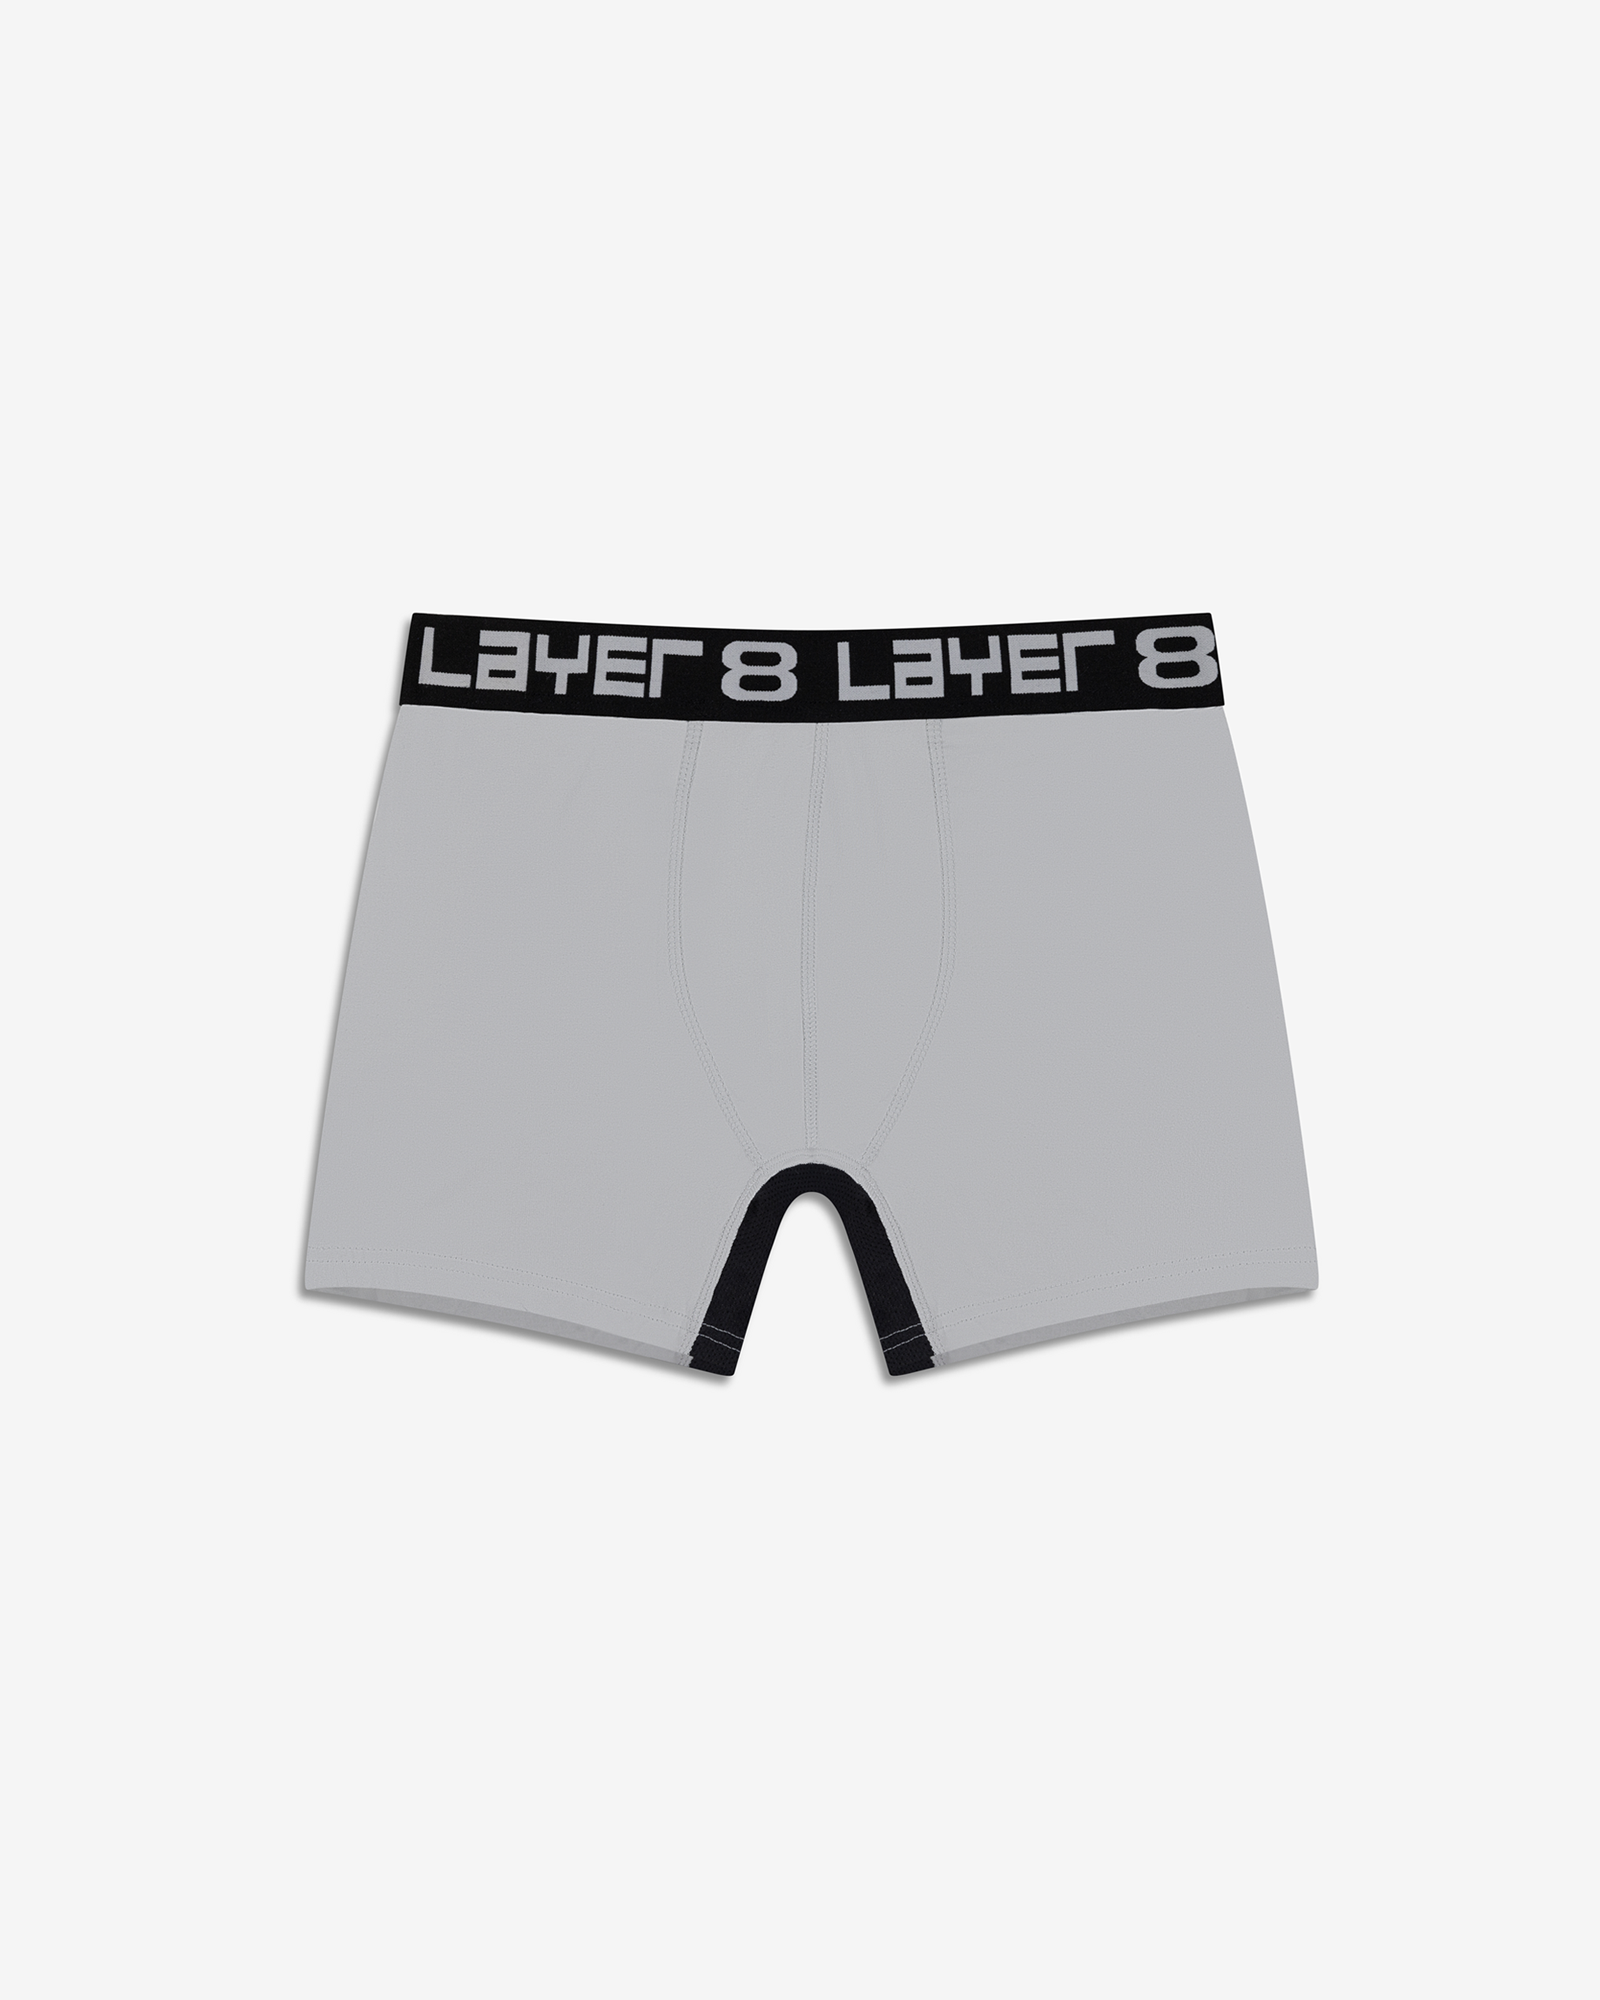 LAYER 8 Men's Basic's 6-Pack Everyday Trunk Briefs Underwear